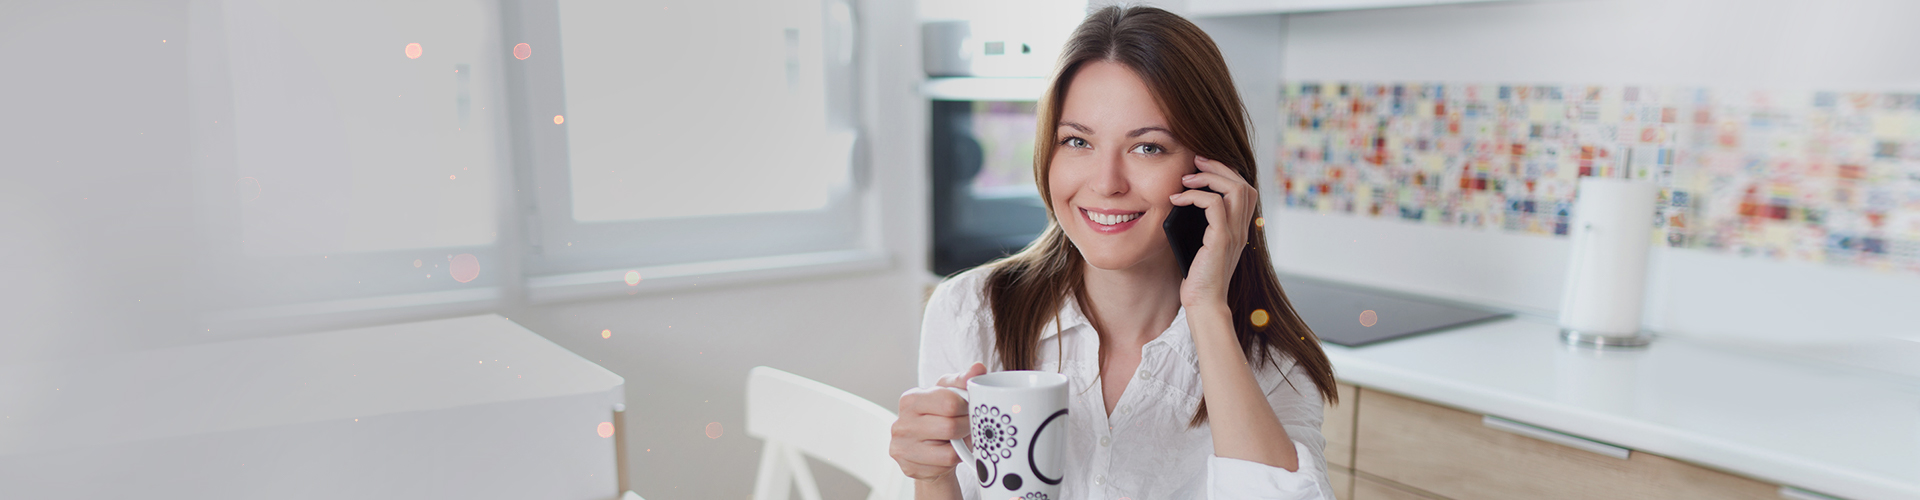 Uśmiechnięta kobieta rozmawia przez telefon komórkowy, trzymając kubek